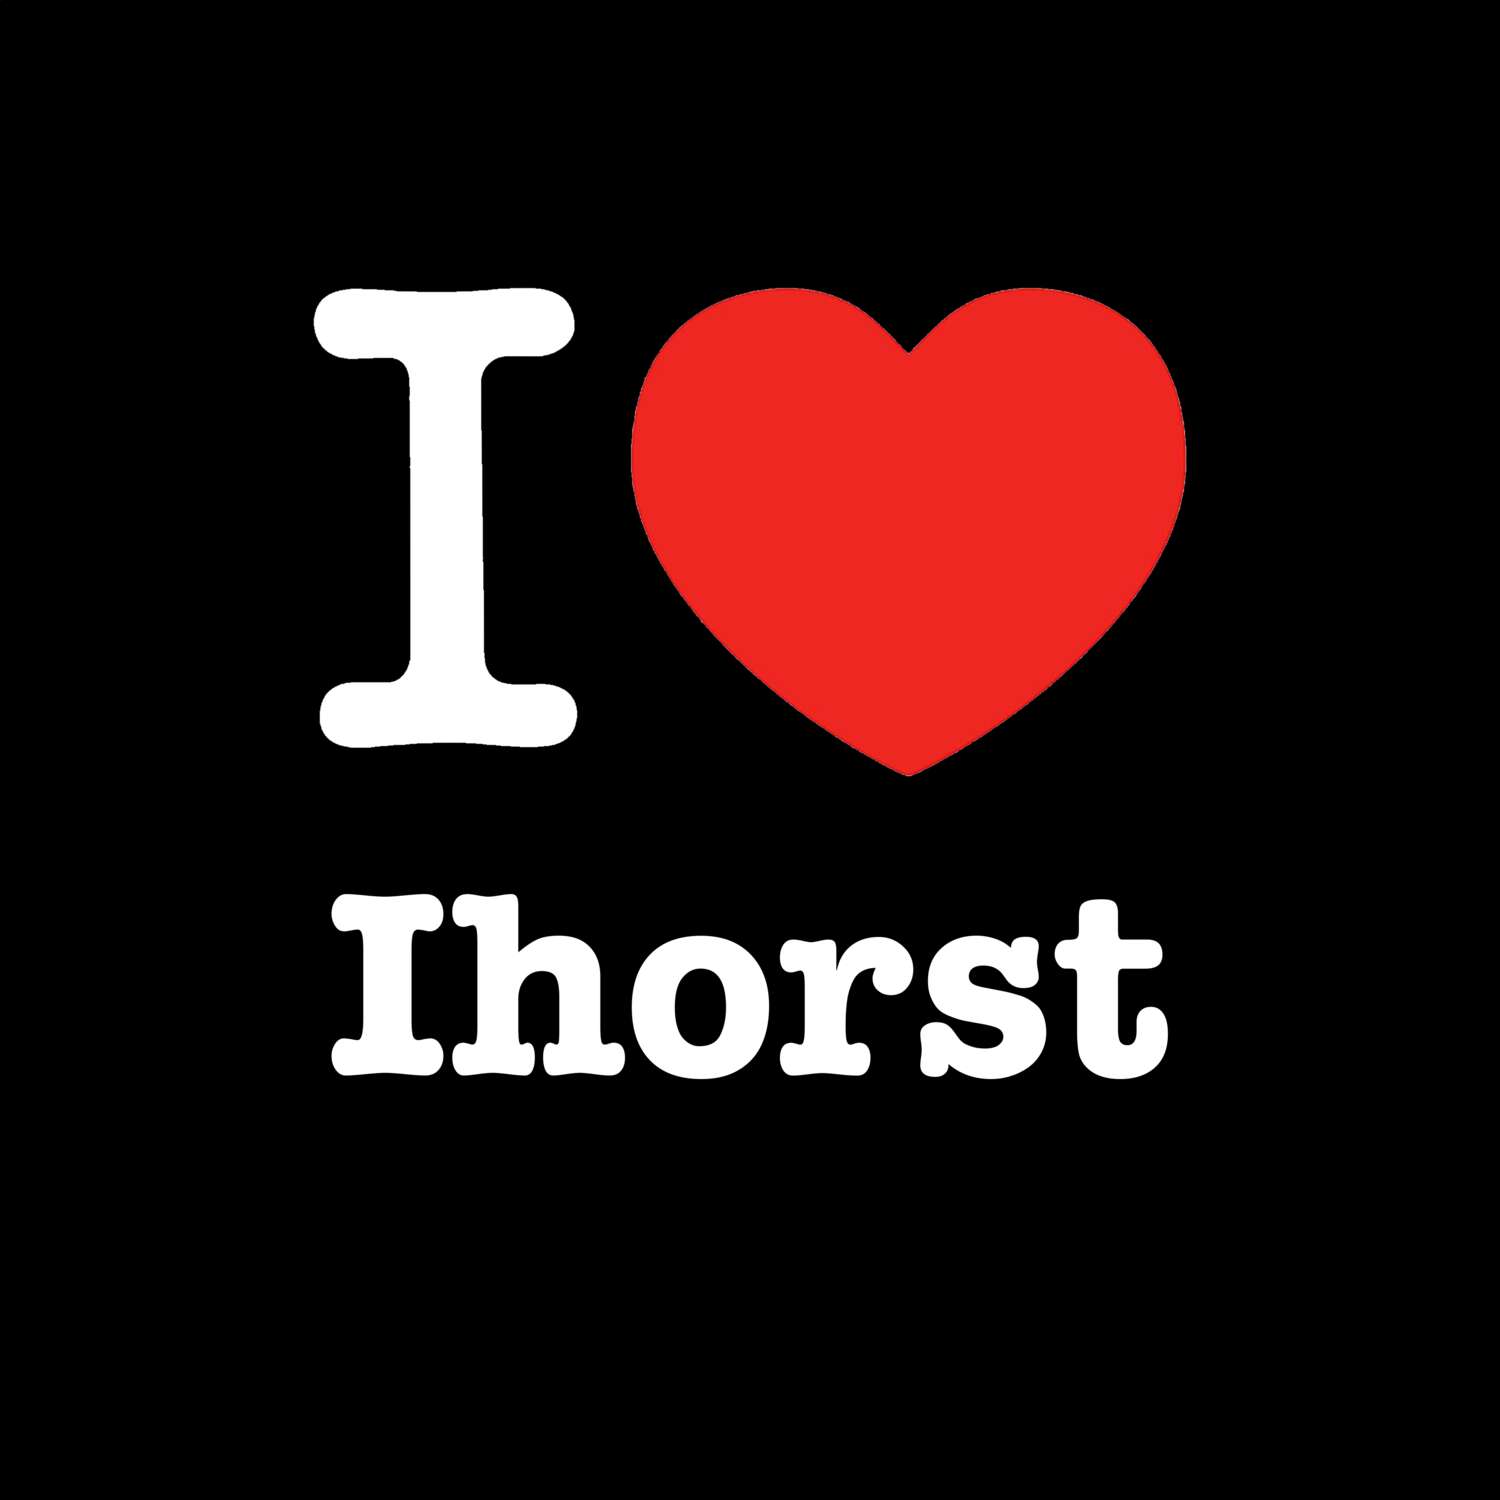 Ihorst T-Shirt »I love«